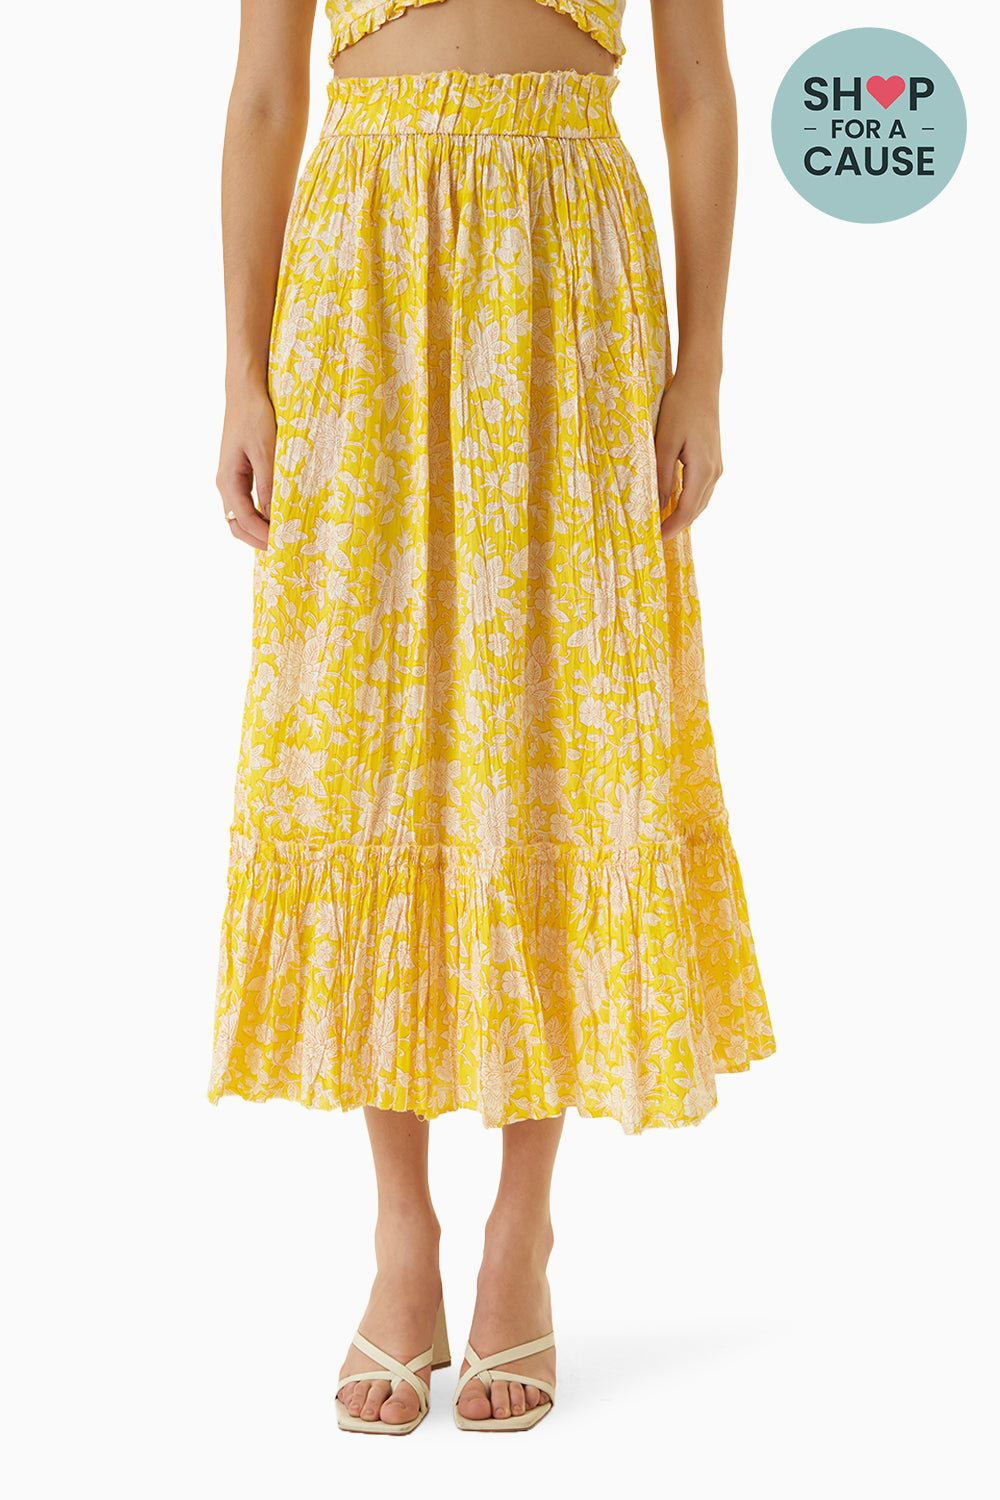 The Yellow Mysore Skirt